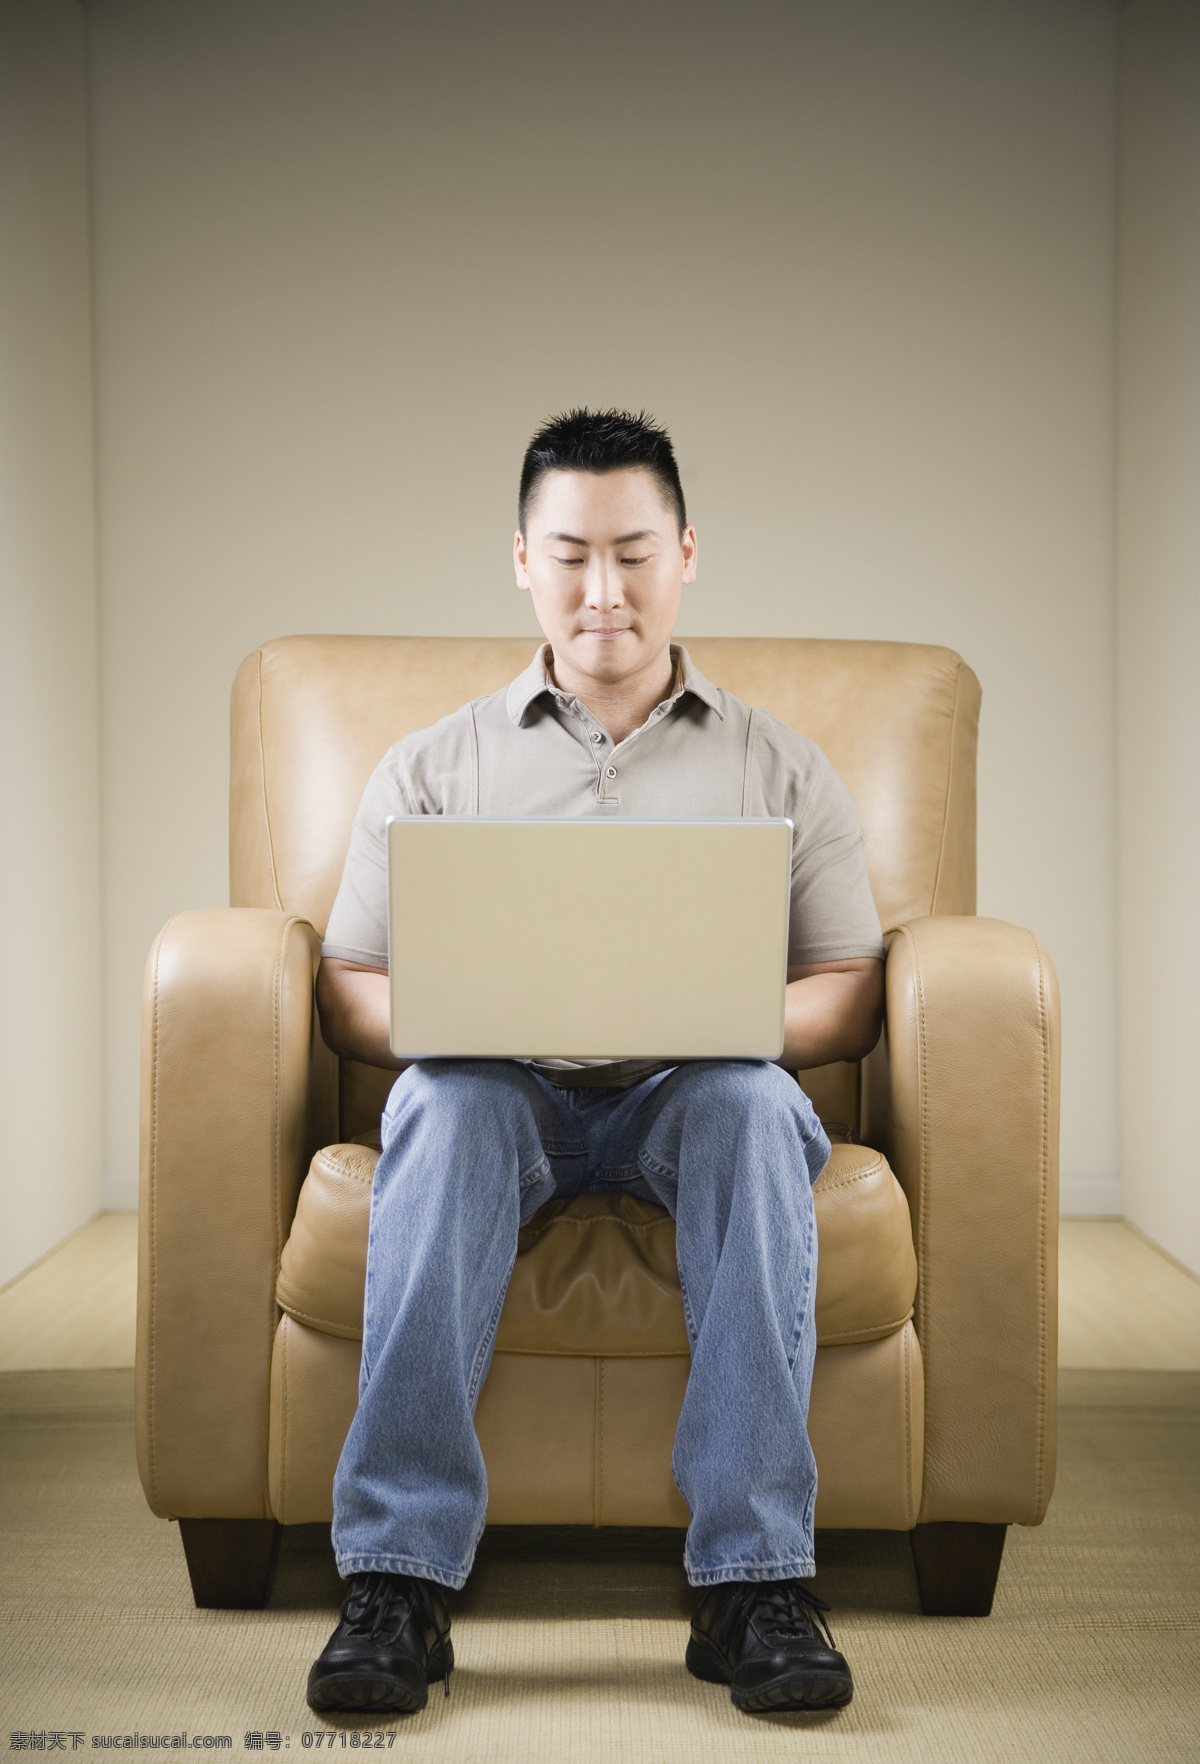 坐在 沙发 上 玩电脑 男人 男性男人 中国男人 人物摄影 玩电脑的男人 休闲男人 手提电脑 男人图片 人物图片